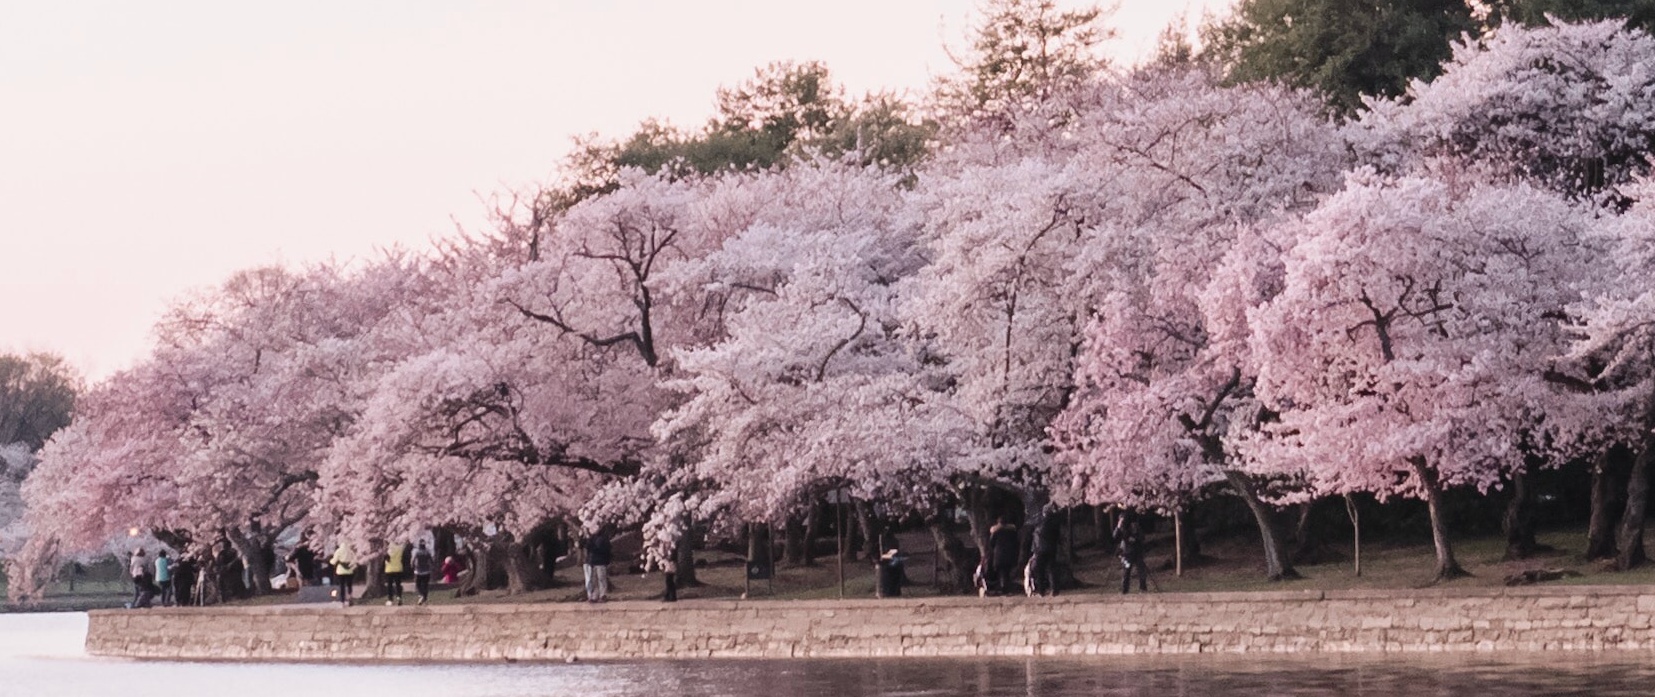 2023 National Cherry Blossom Festival Guide